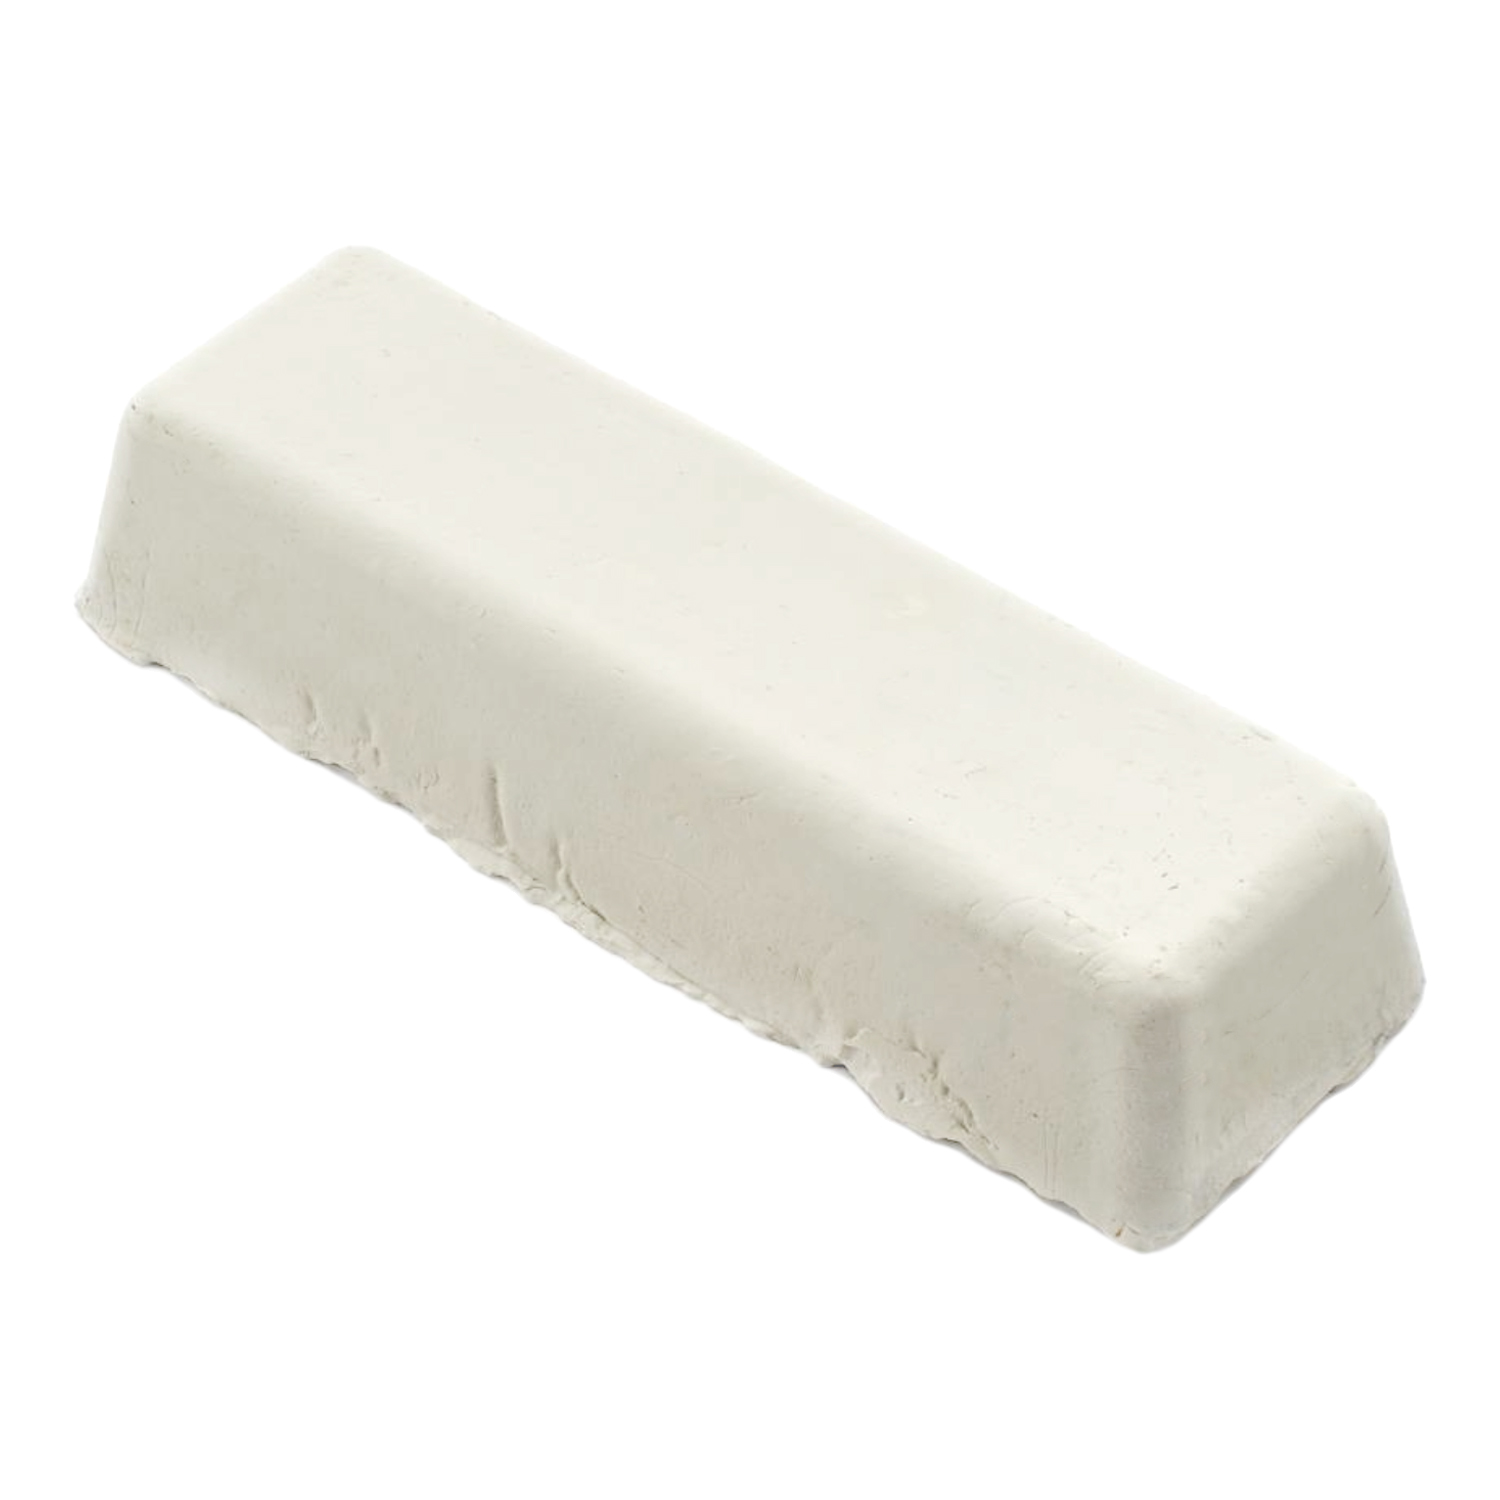 Pâte à polir blanche pour polissage Inox et acier - 10506007 - Sidamo